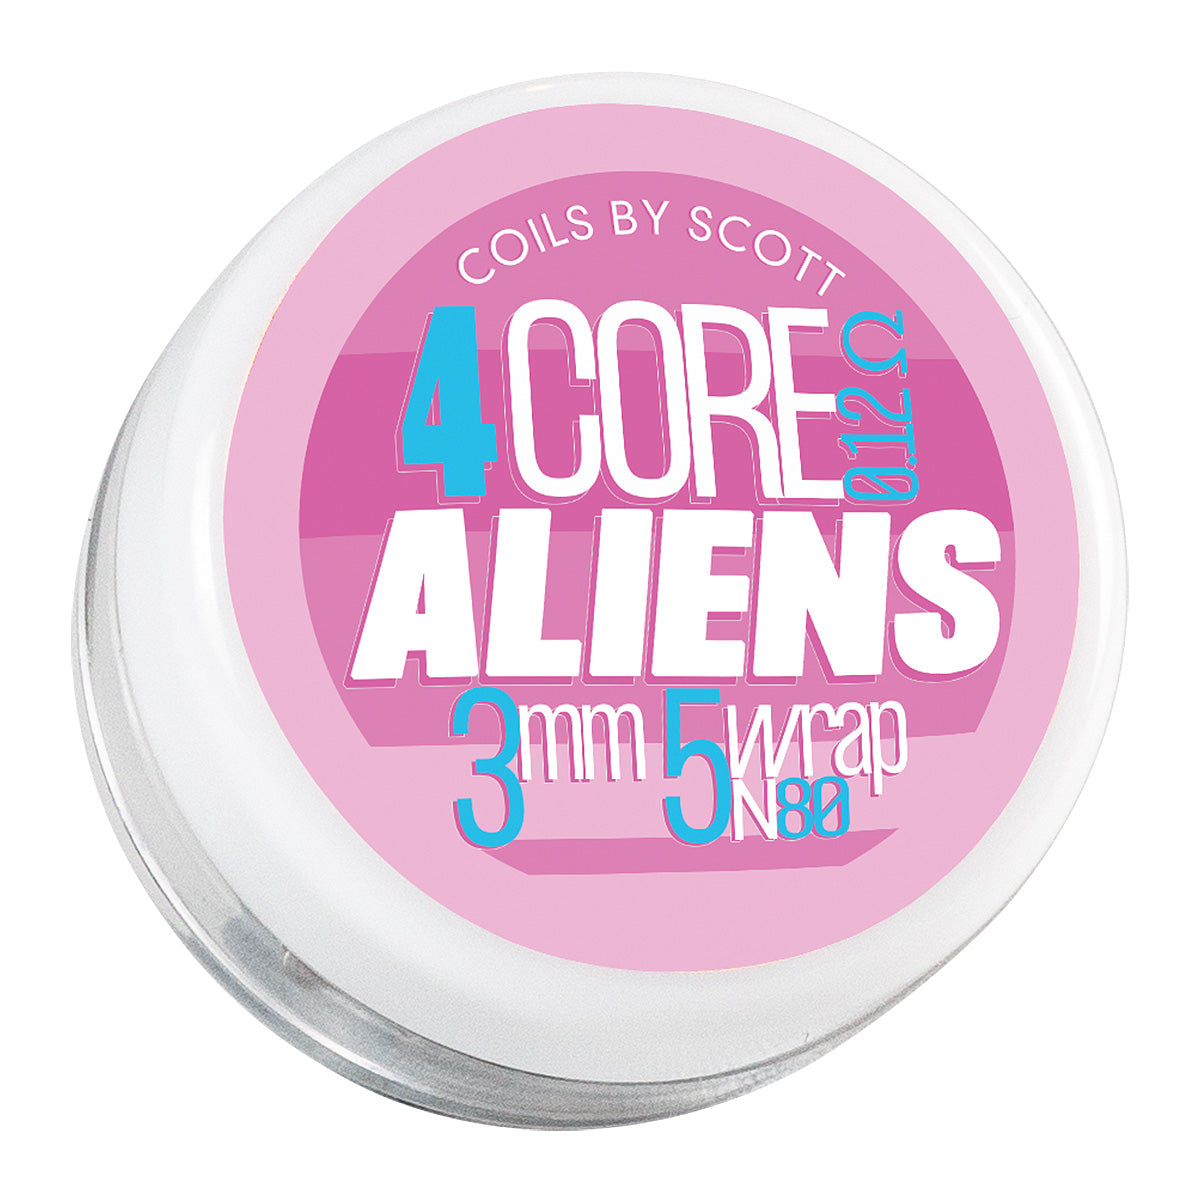 4 Core Alien Coils by Coils by Scott